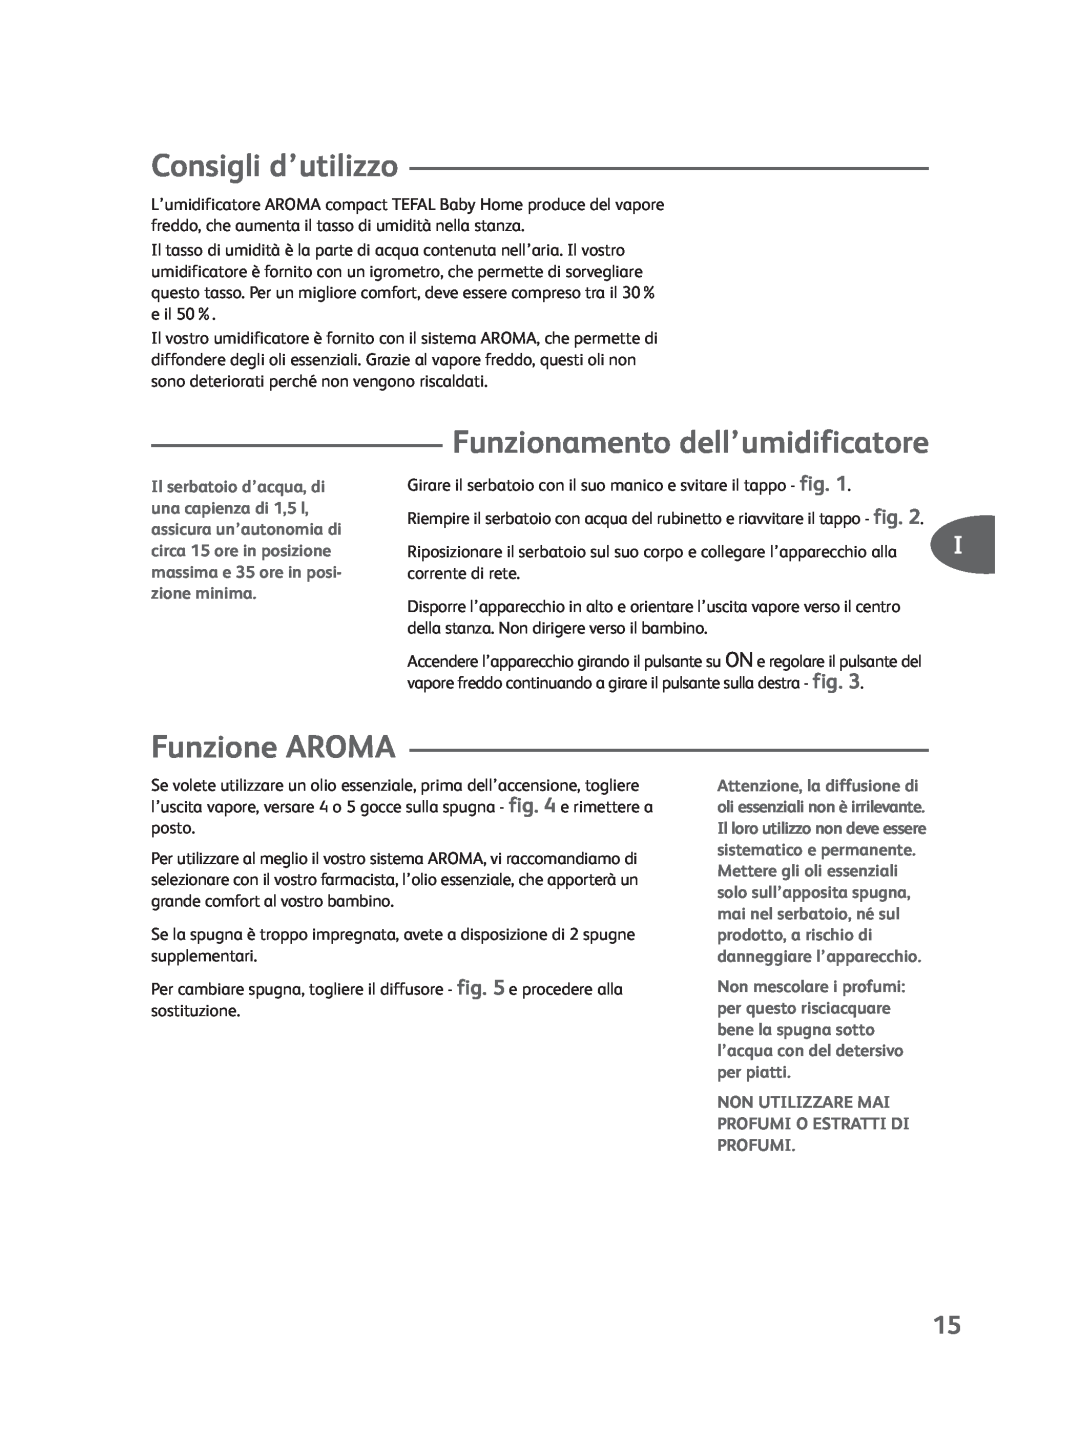 Groupe SEB USA - T-FAL Compact Humidifier manual Consigli d’utilizzo, Funzione AROMA 